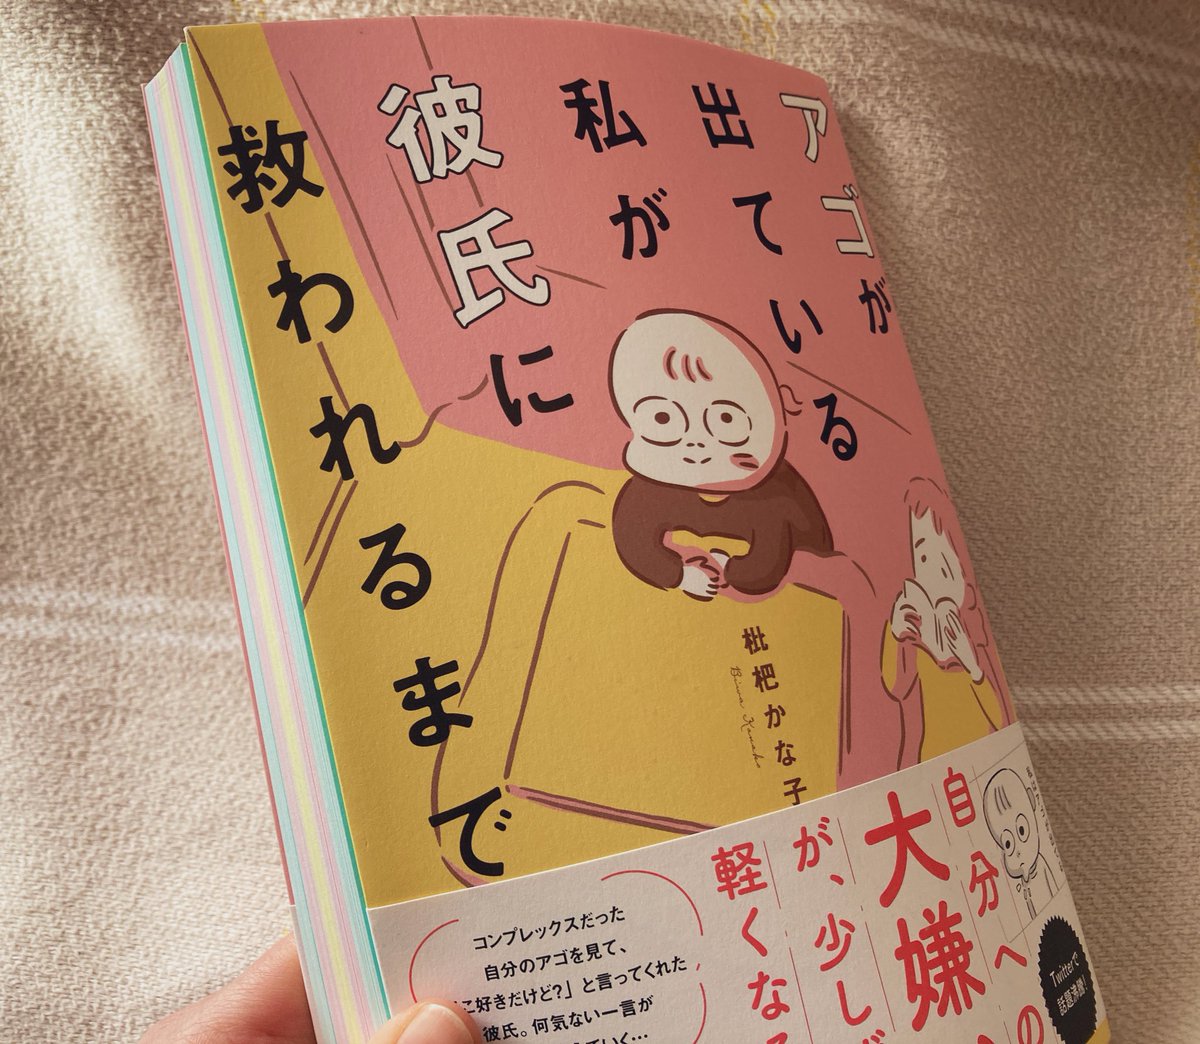 かな子さん(@BiwaAmazake )の本って本当かわいいんだ…
裁断した断面の色もかわいいし、絵のタッチもお話もかわいいんだ…☺️ 